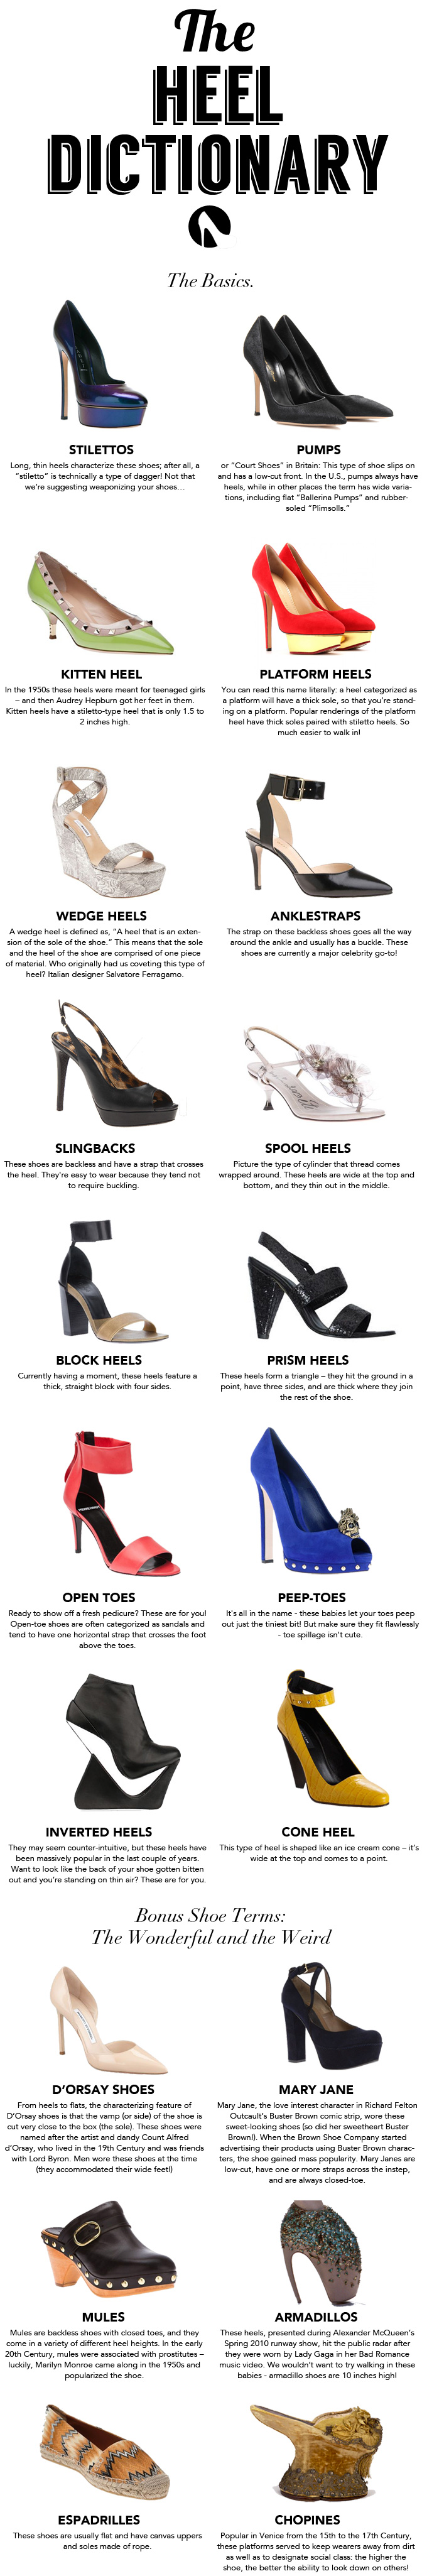 the heel dictionary, designerswap